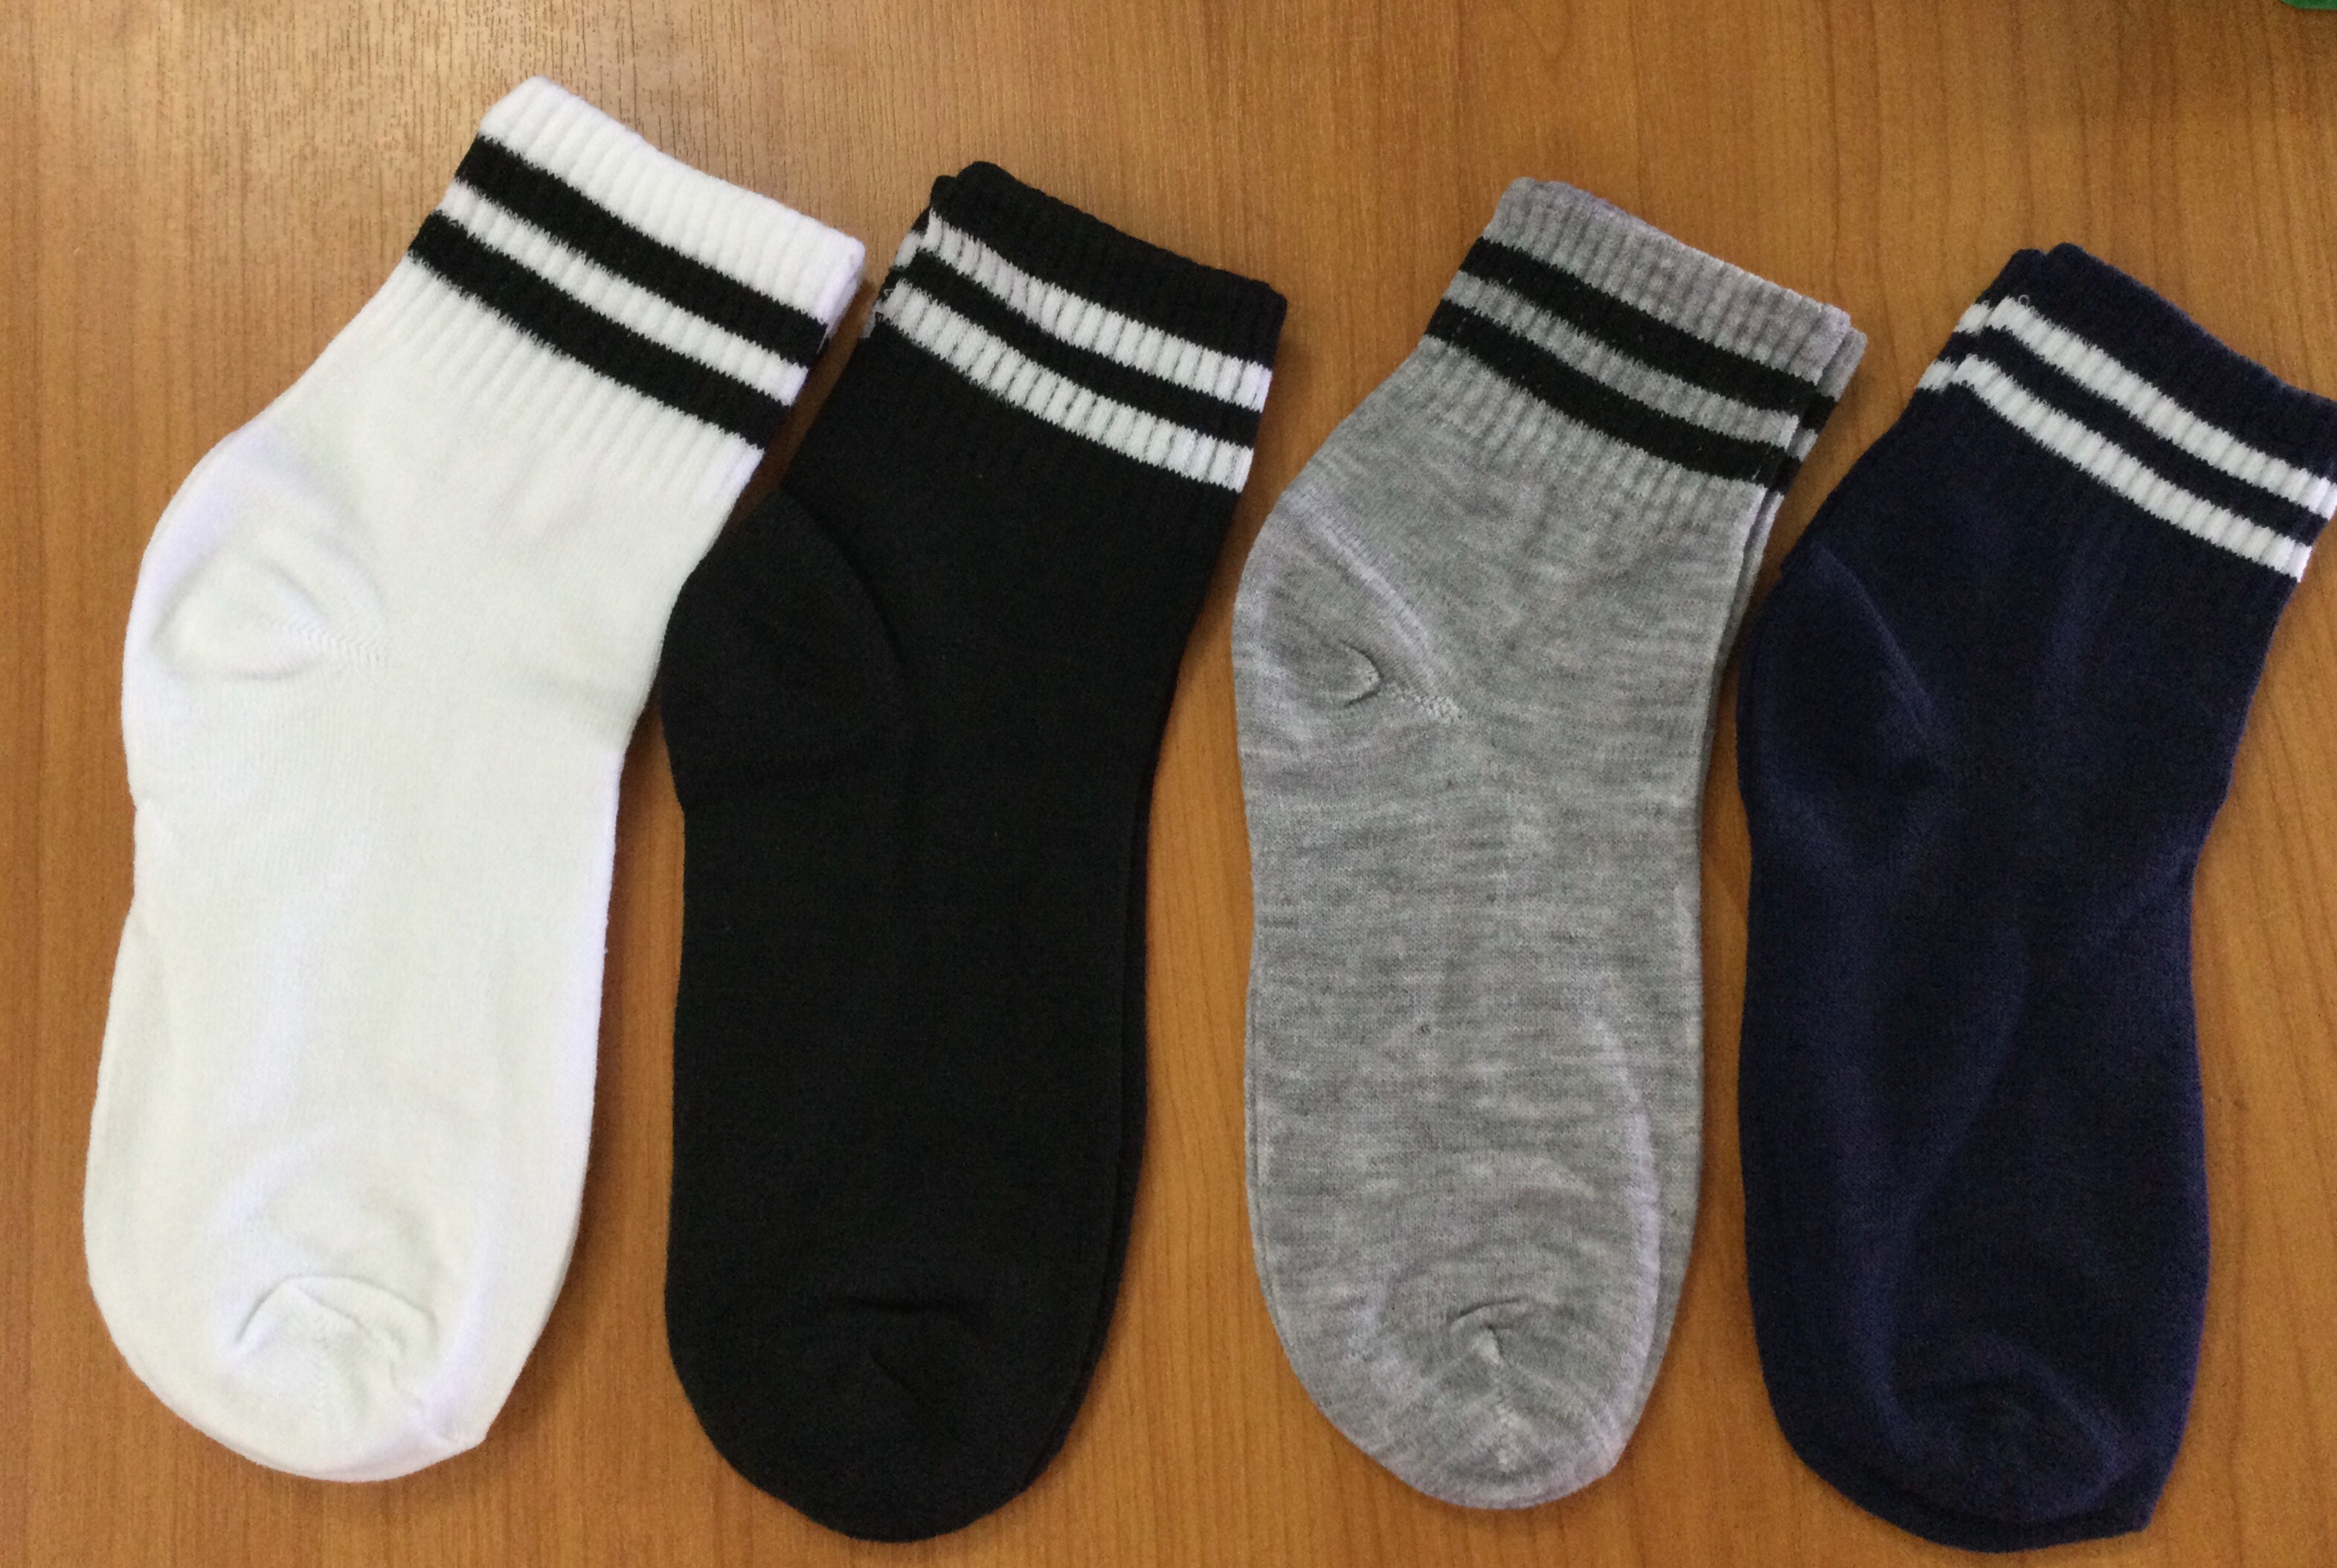 ถุงเท้าข้อสั้น  เนื้อผ้านุ่ม สีดำ/สีขาว/สีเทา/คละสี ฟรีไชส์ (แพค 12 คู่)